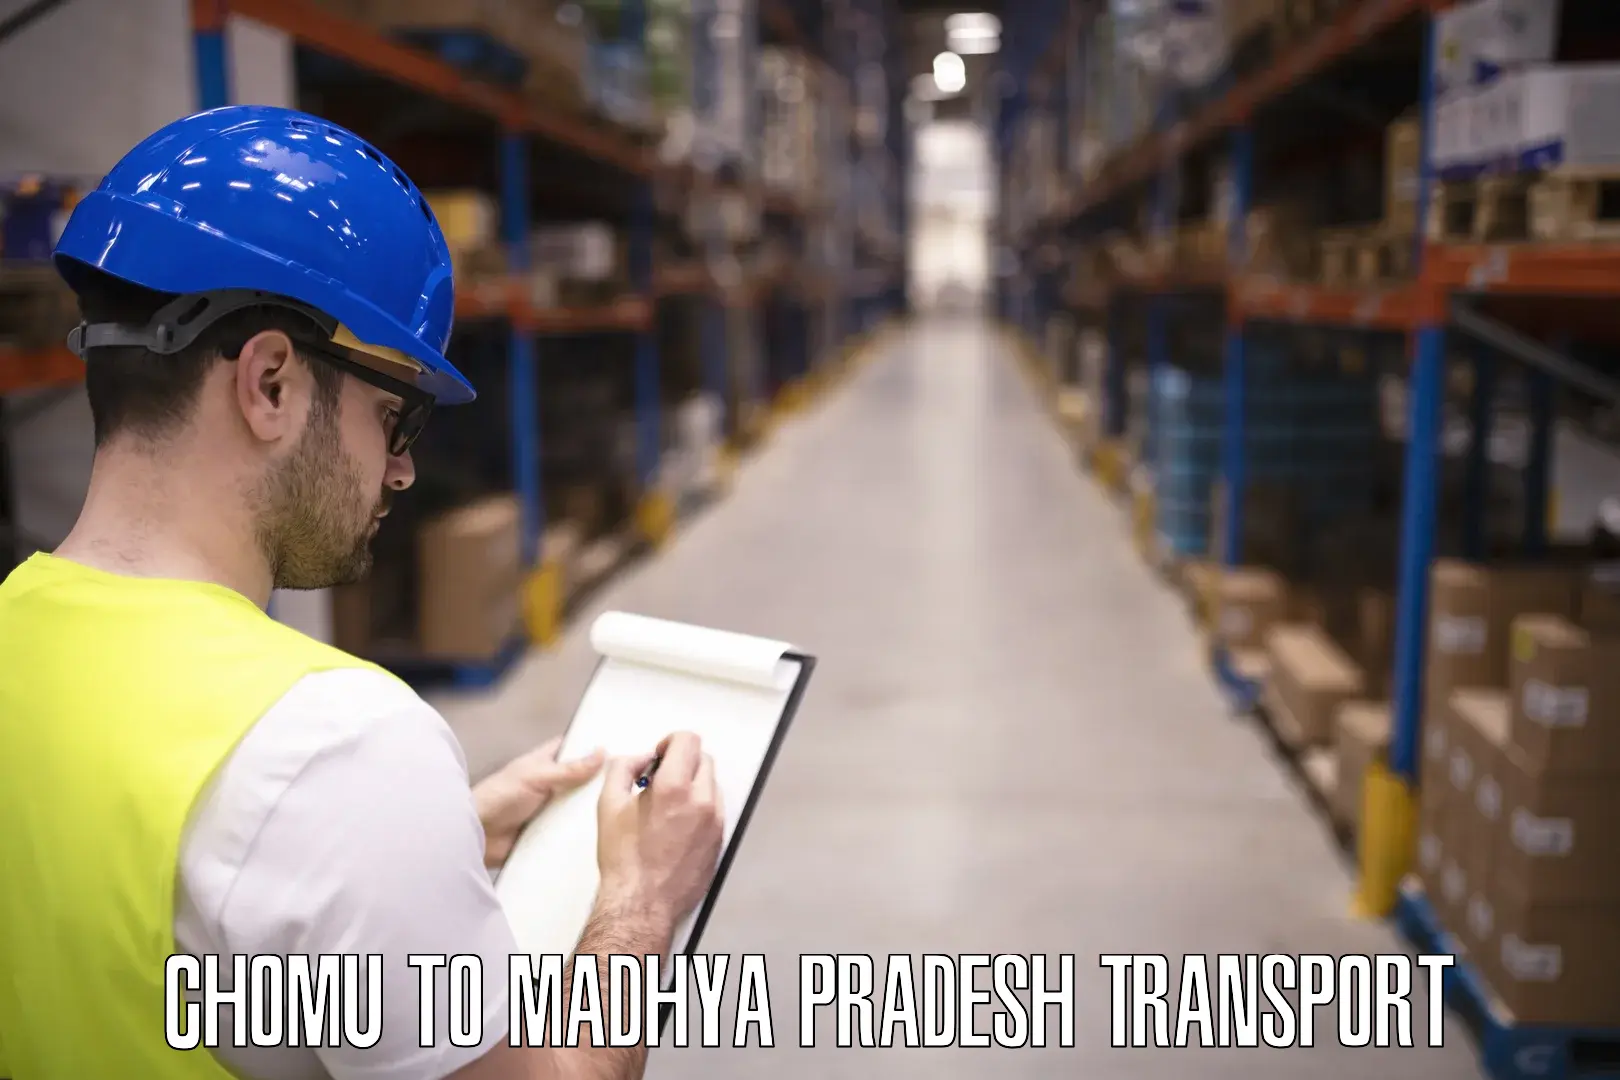 Domestic goods transportation services Chomu to Madhya Pradesh